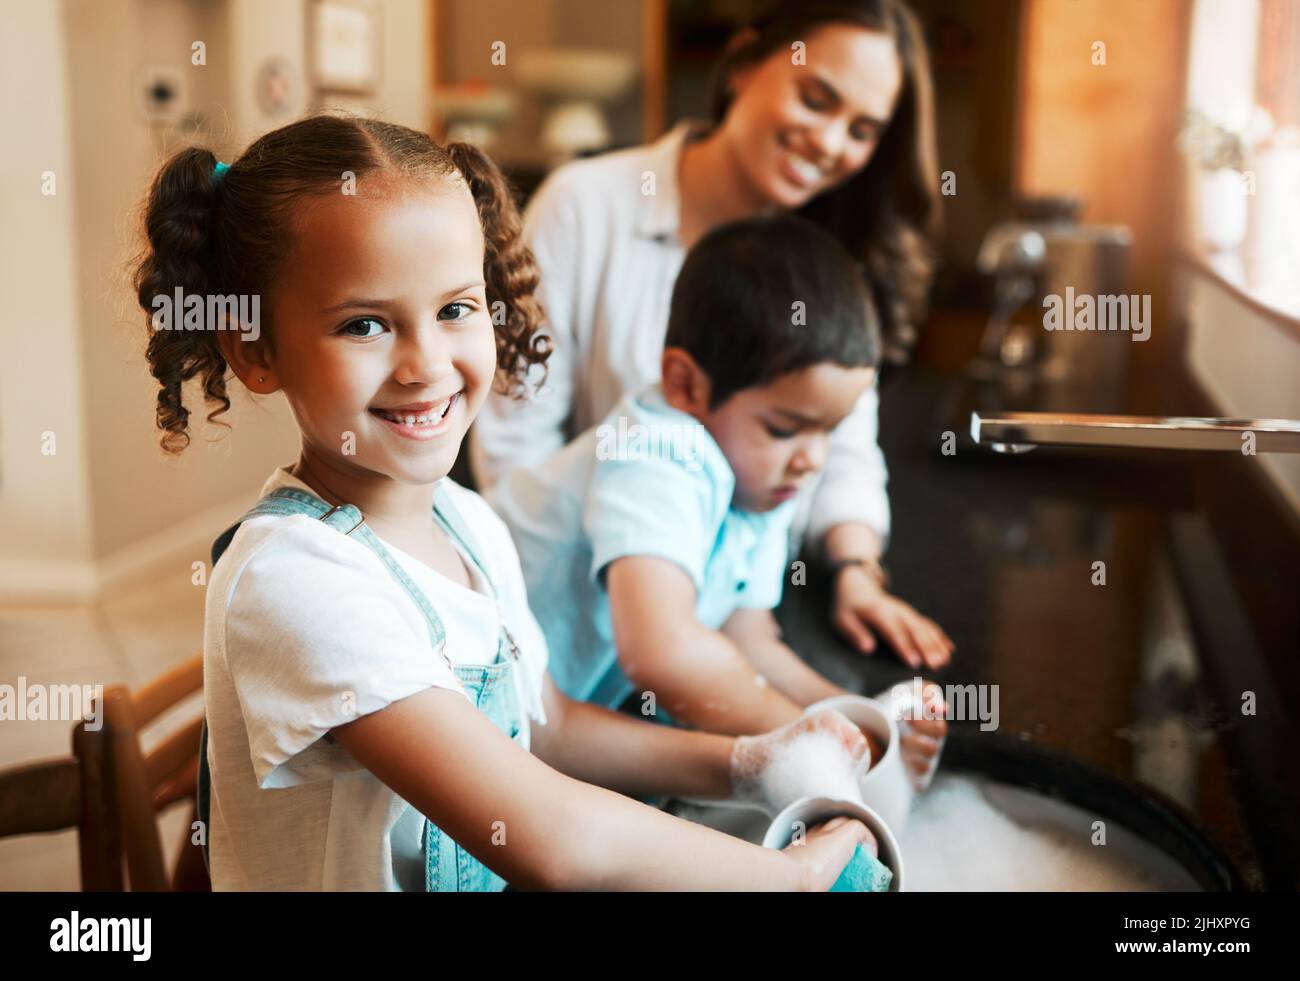 Bonne joyeuse petite fille de race mixte aidant sa mère à laver les plats dans la cuisine à la maison. Enfant hispanique souriant tout en lavant une tasse avec du savon Banque D'Images